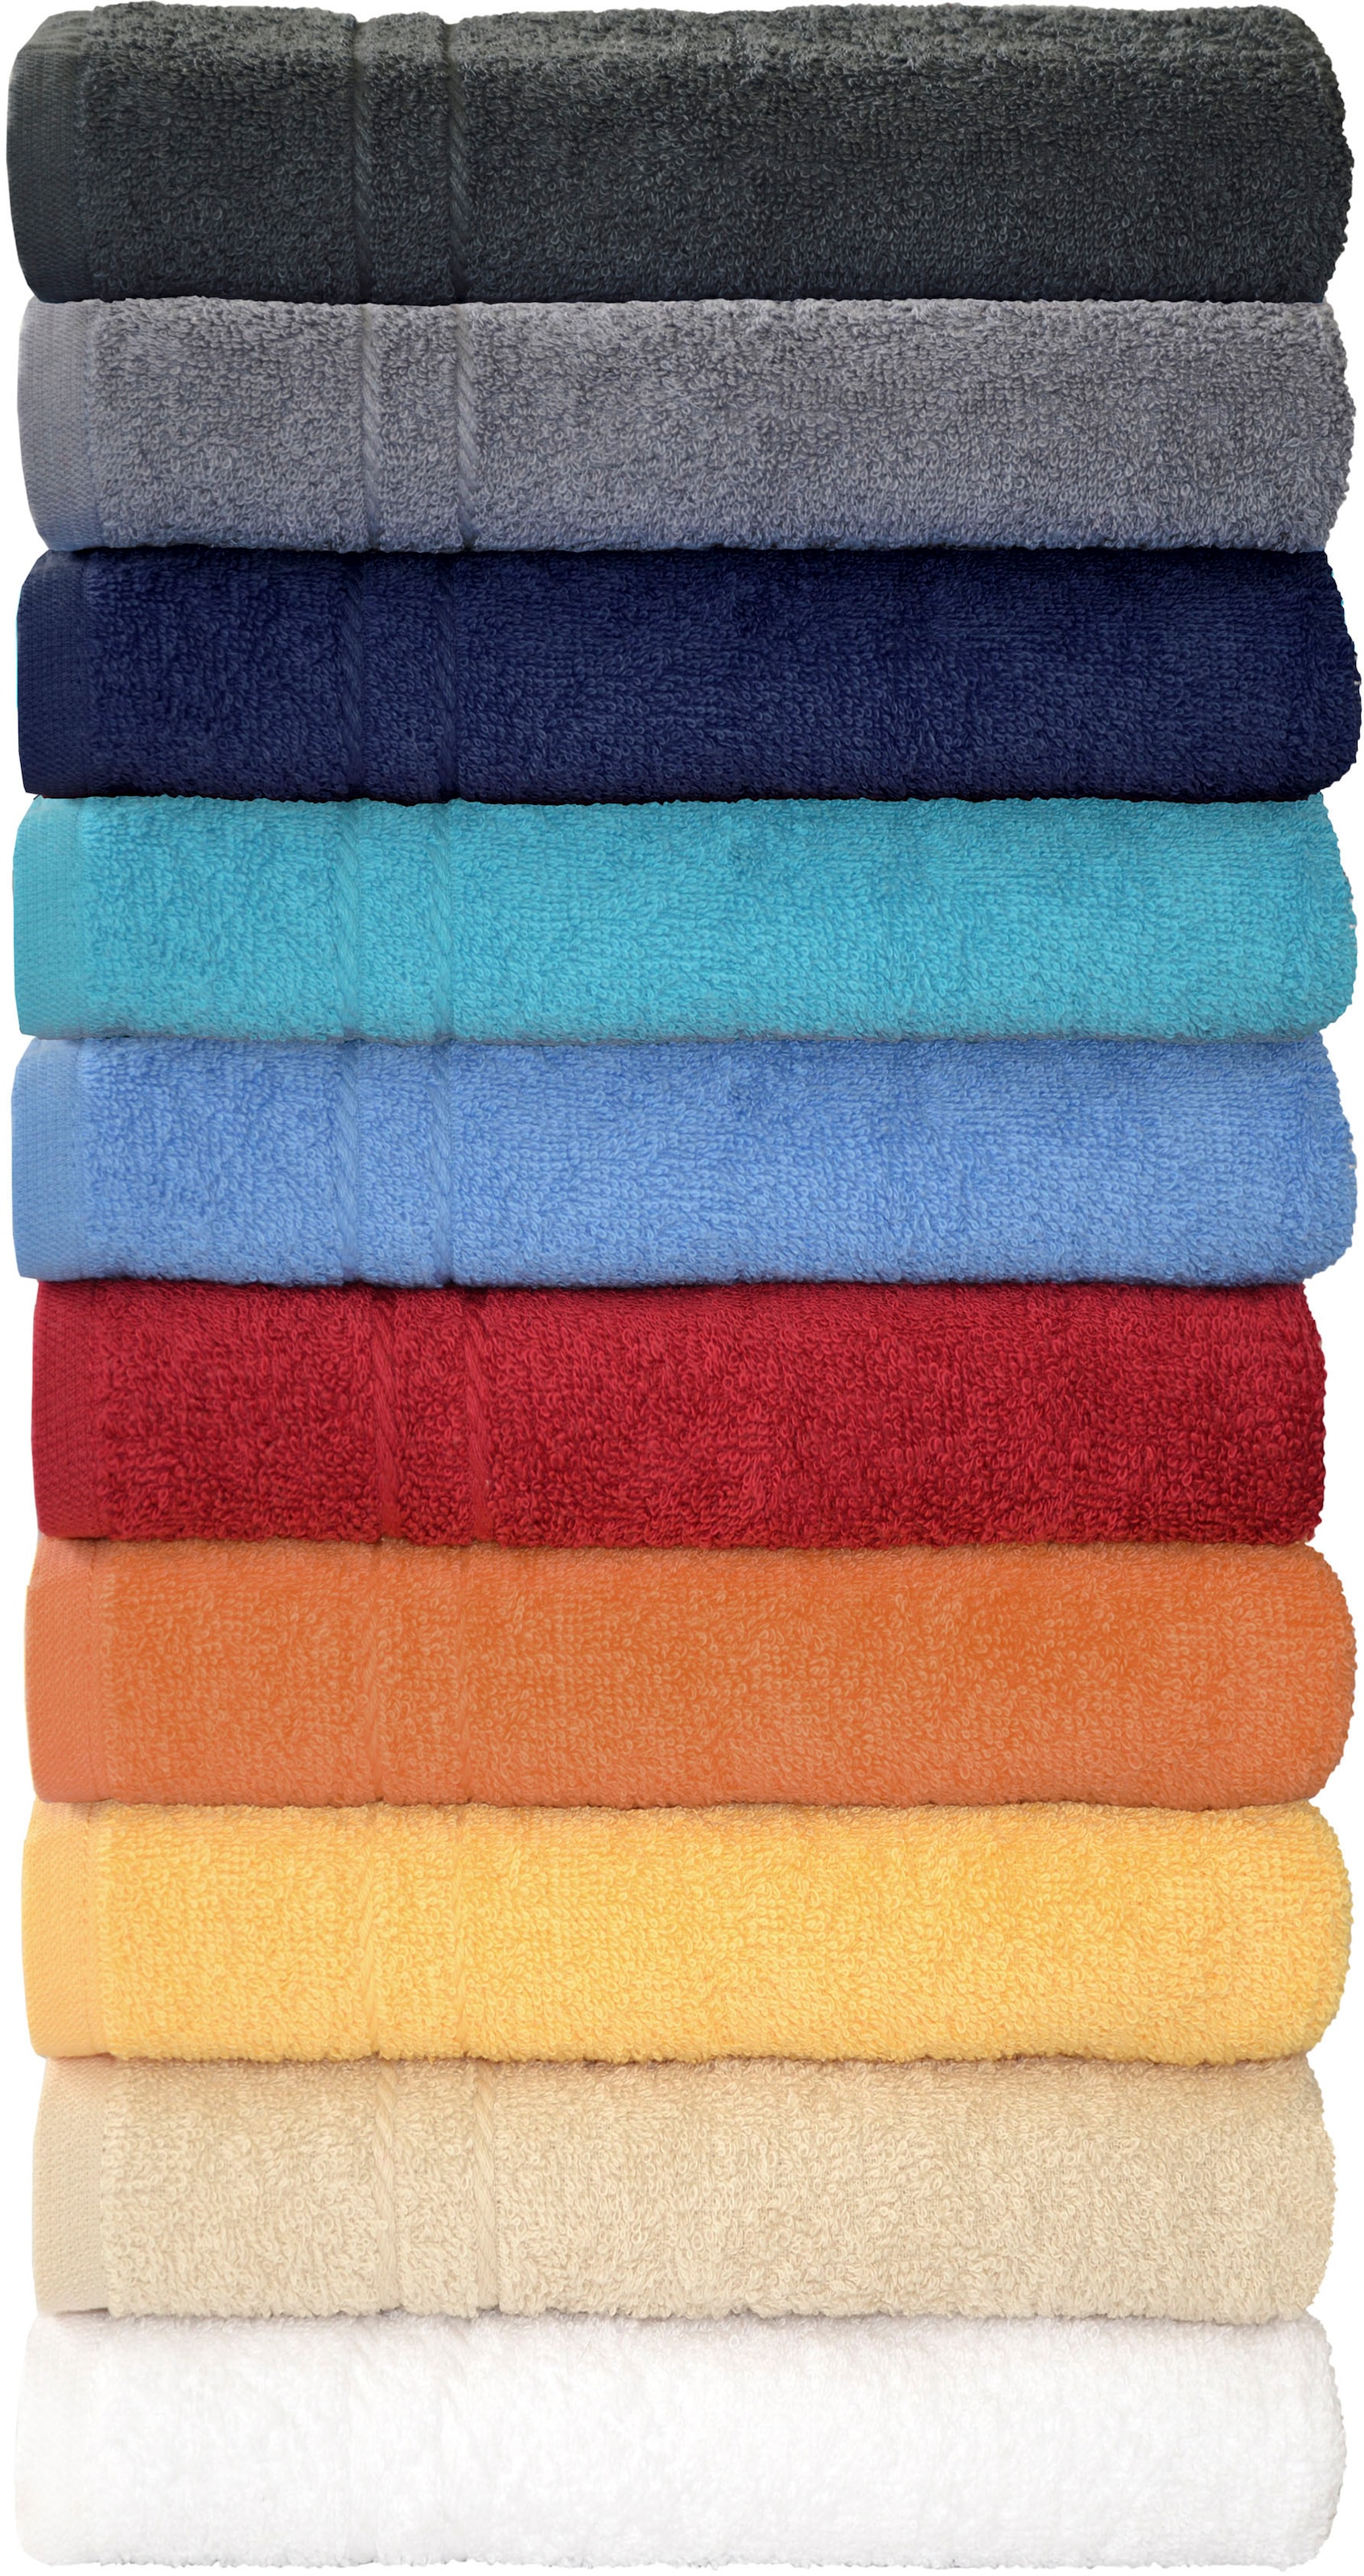 Badetücher und Handtücher jetzt online kaufen bei